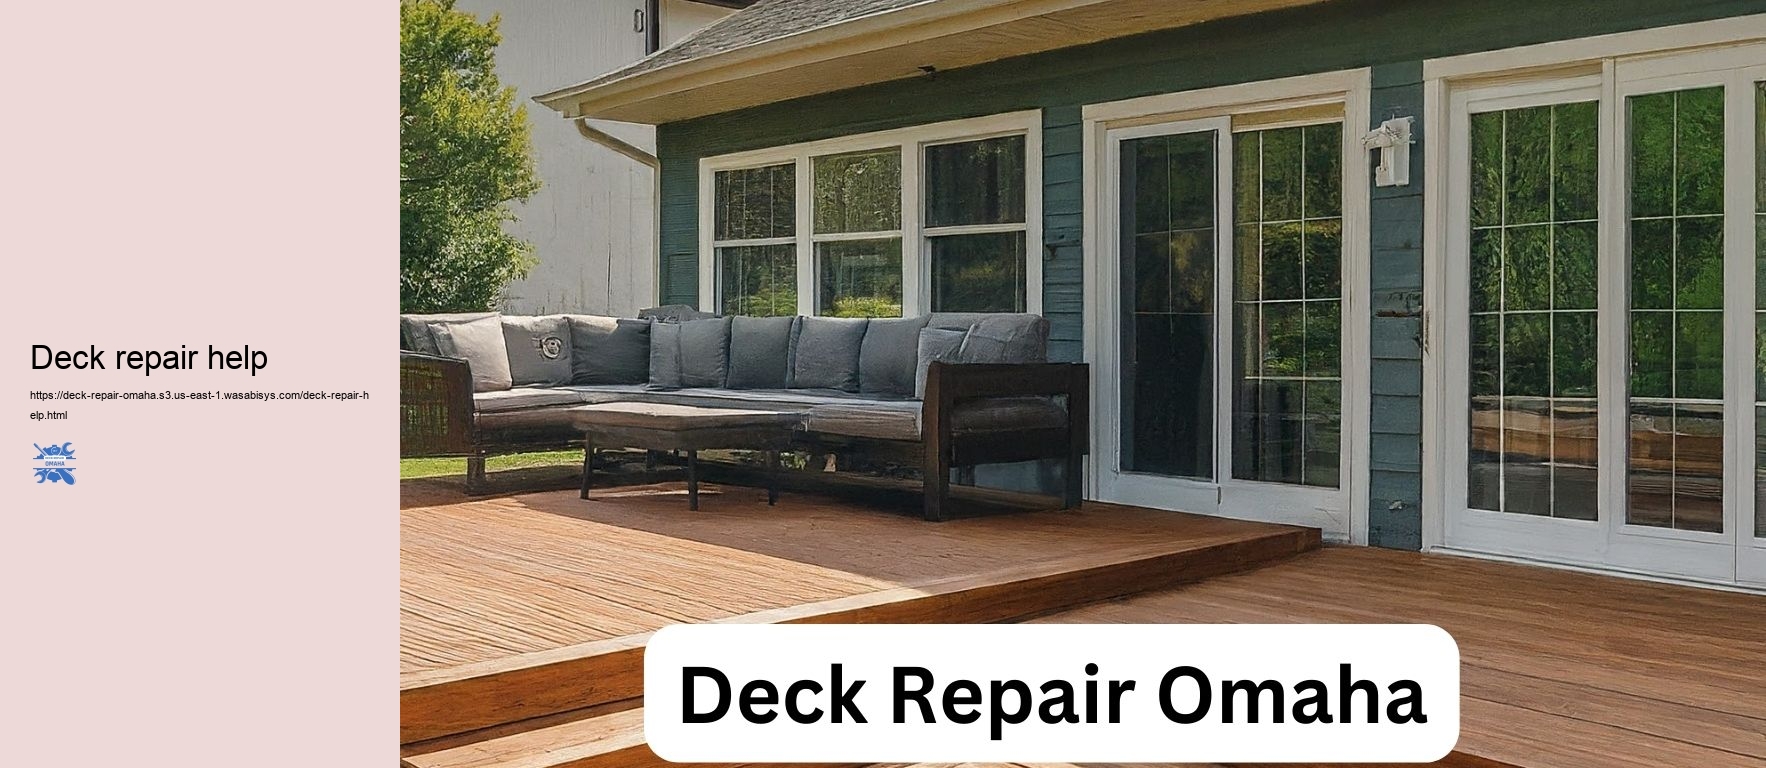 Deck repair help